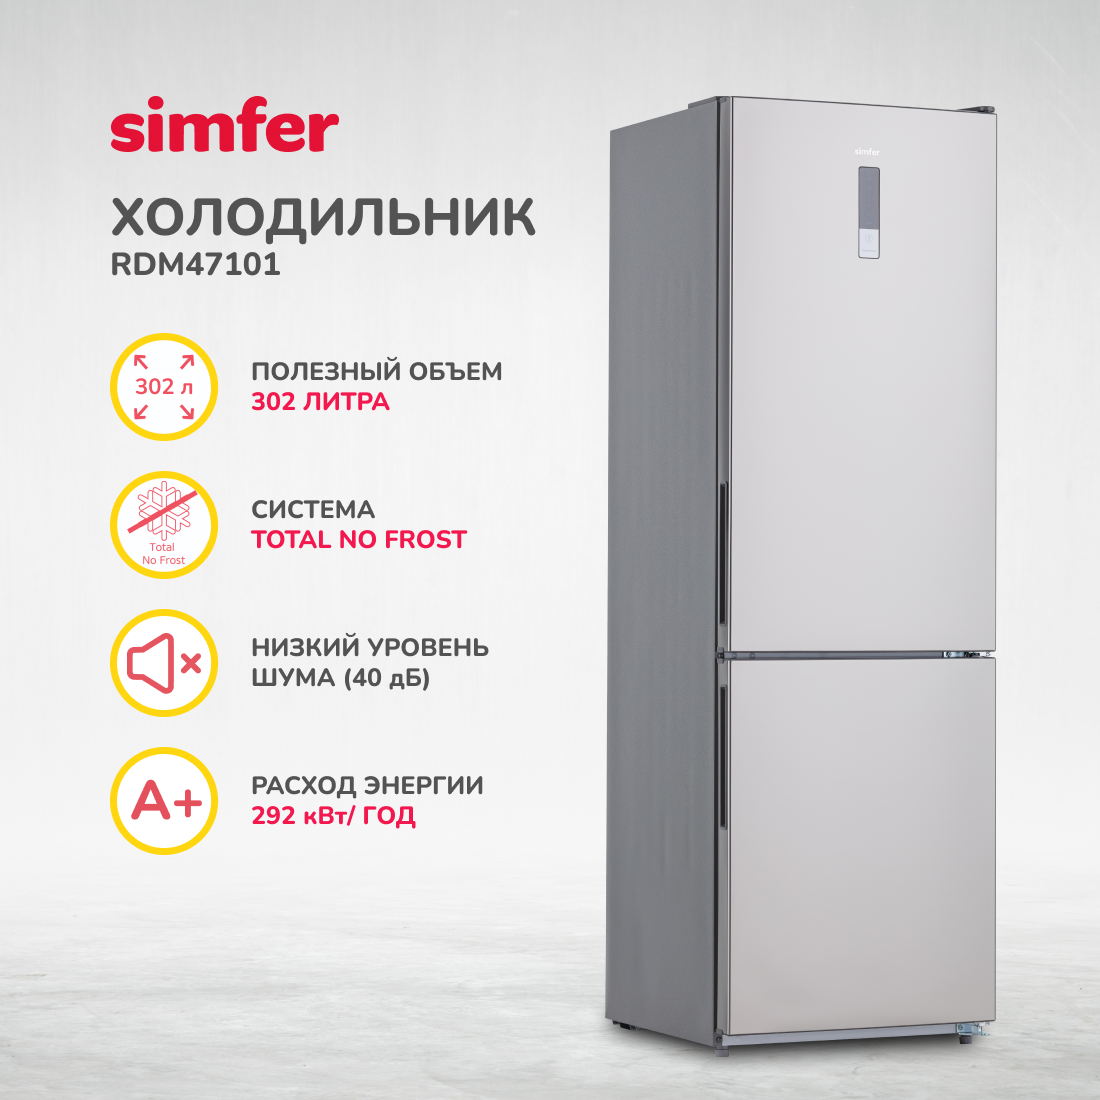 Холодильник Simfer RDM47101, No Frost, двухкамерный, 302 л, цвет серебристый